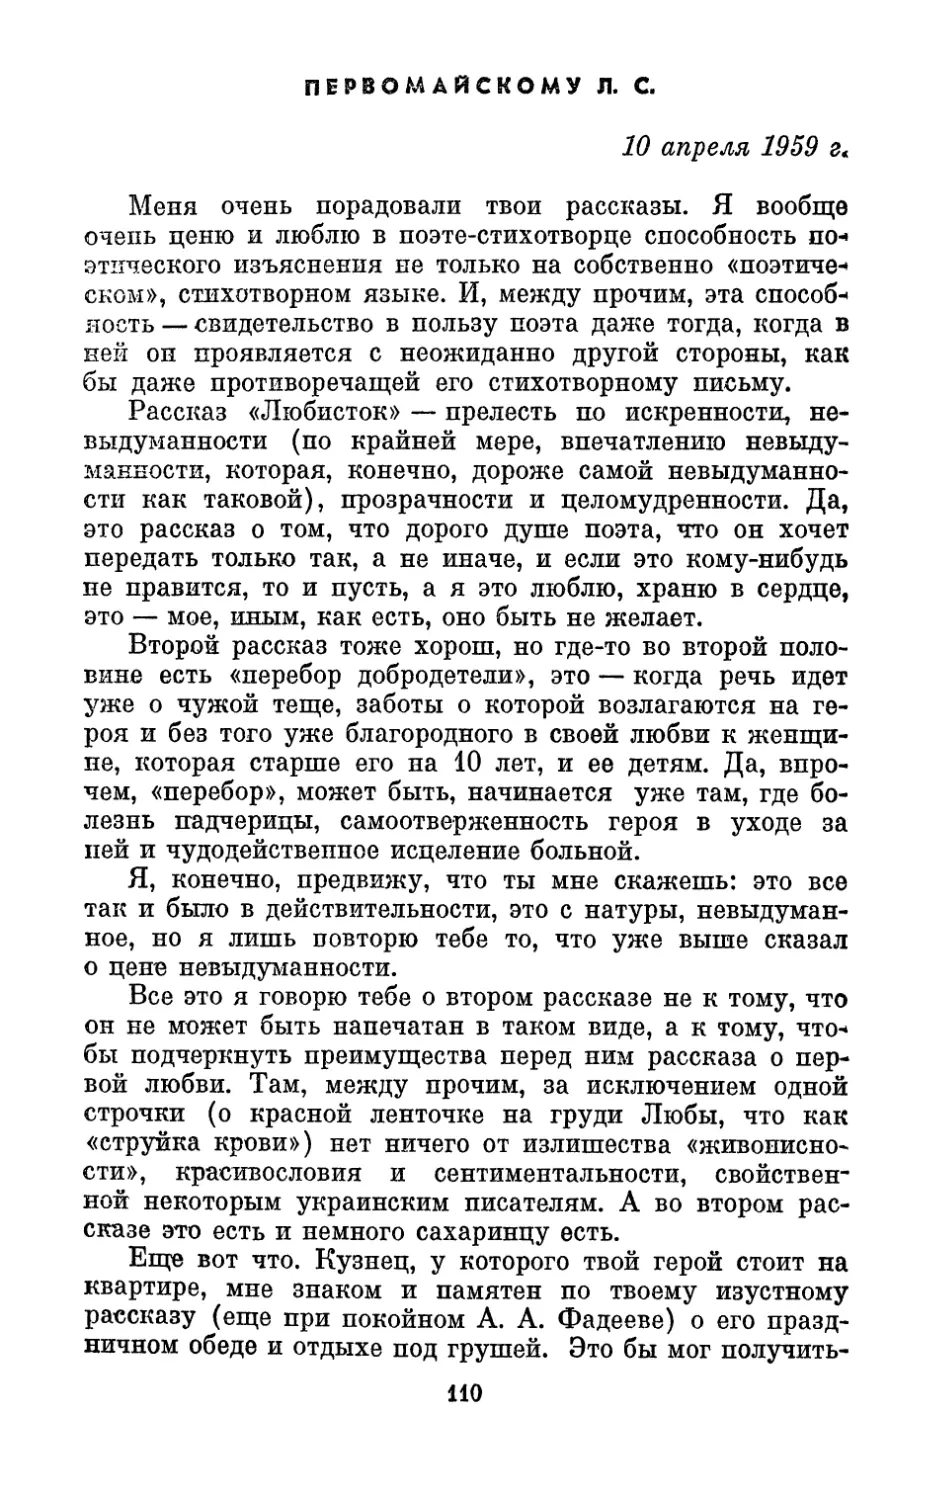 Первомайскому Л. С., 10 апреля 1959 г.